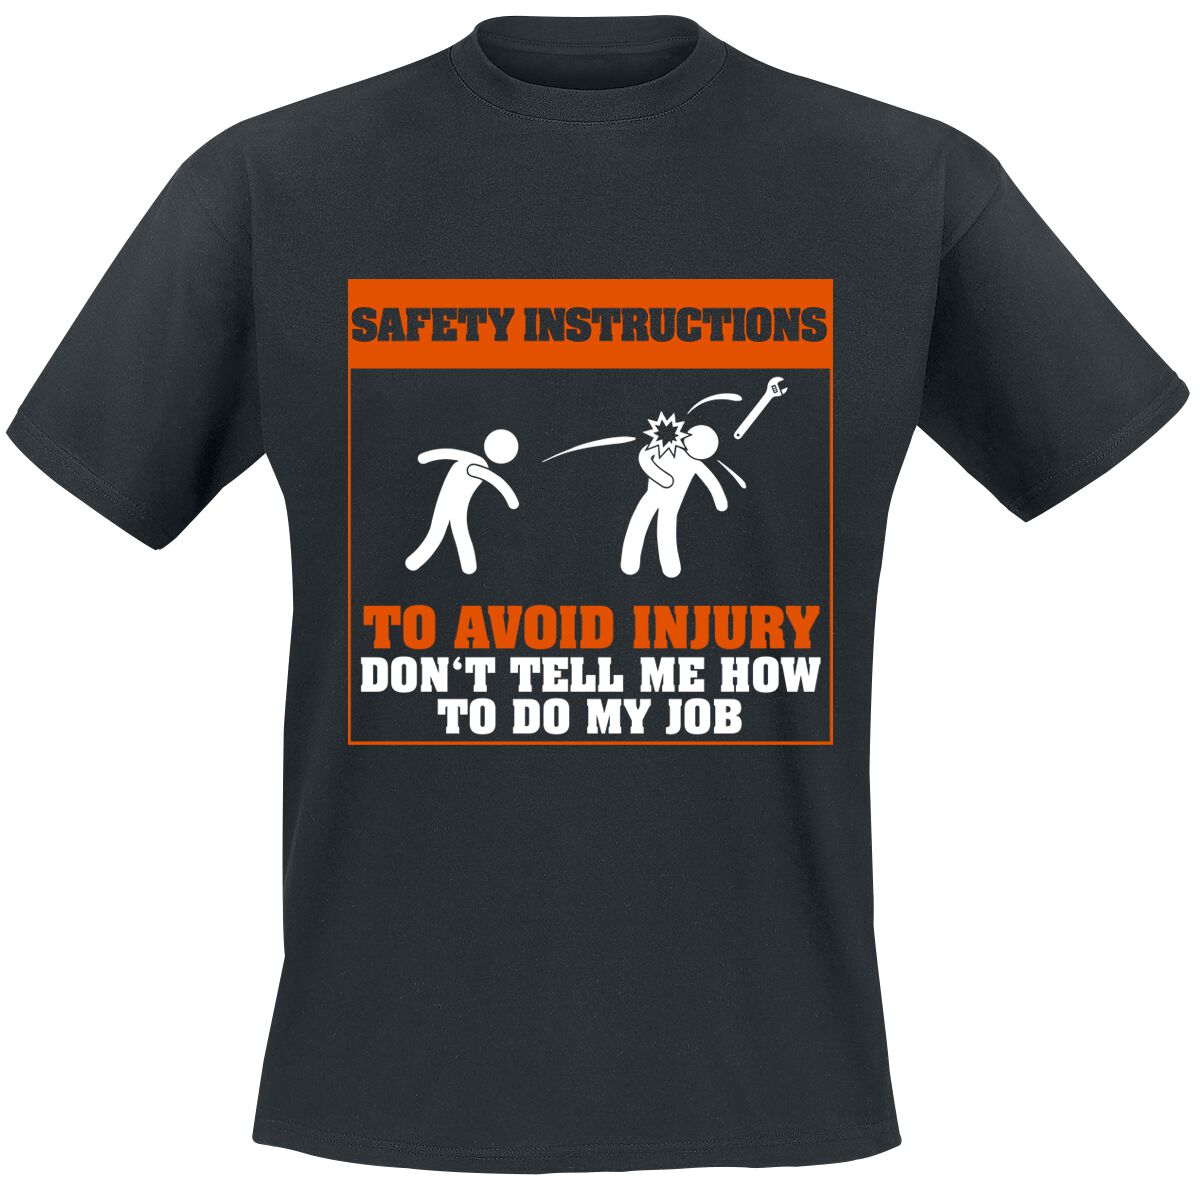 Beruf & Karriere Safety Instructions T-Shirt schwarz in 4XL